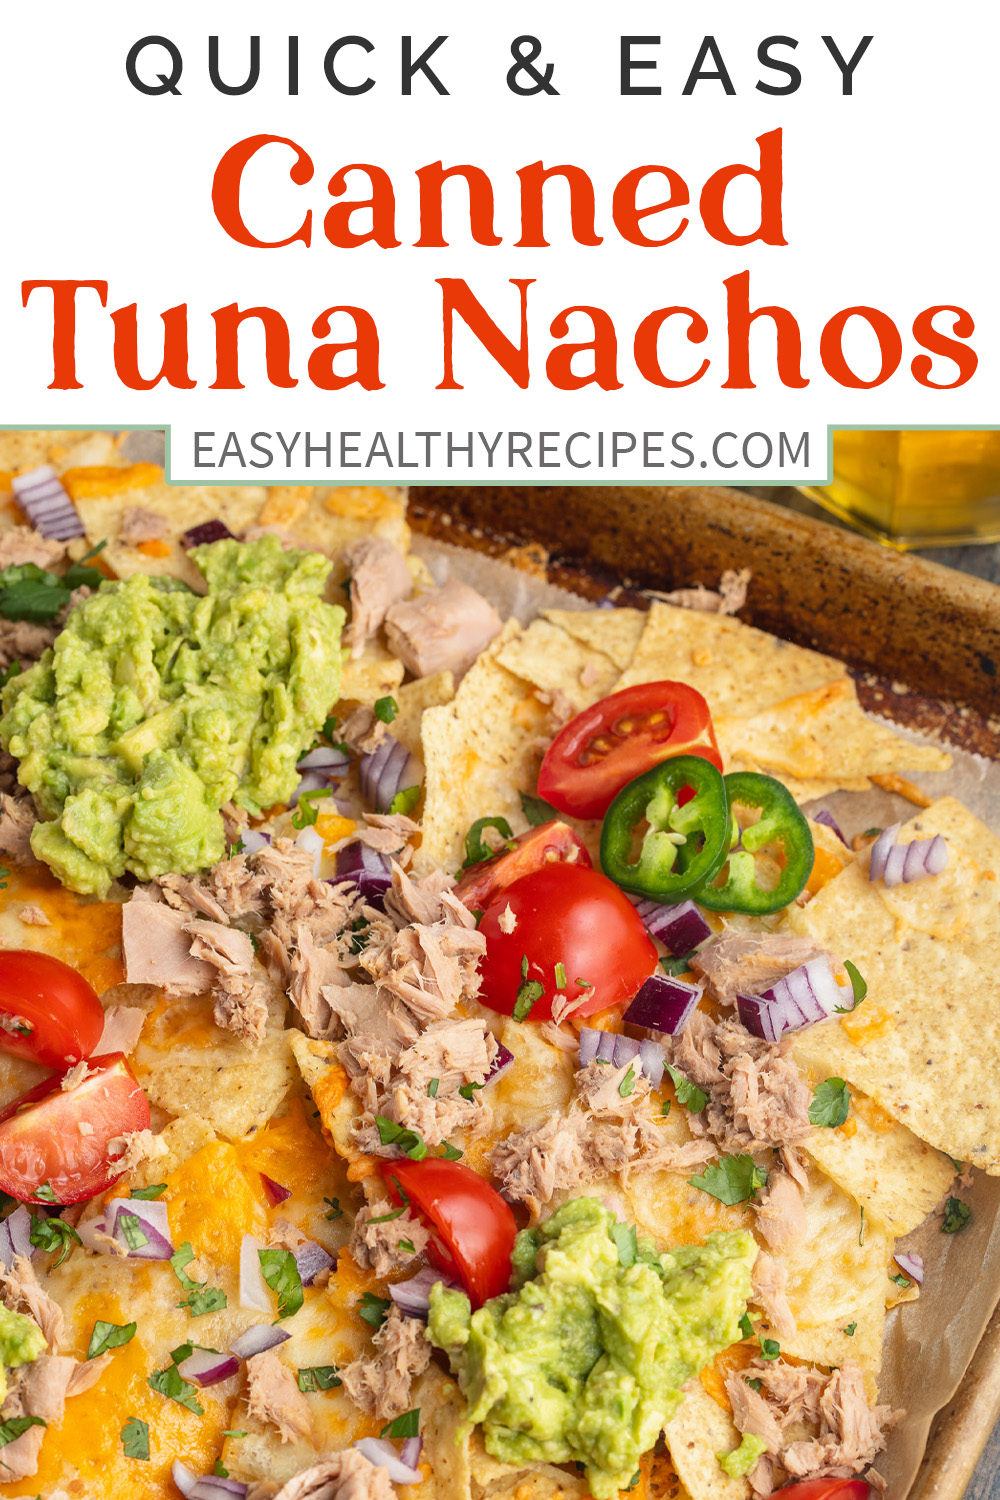 Pin graphic for tuna nachos.